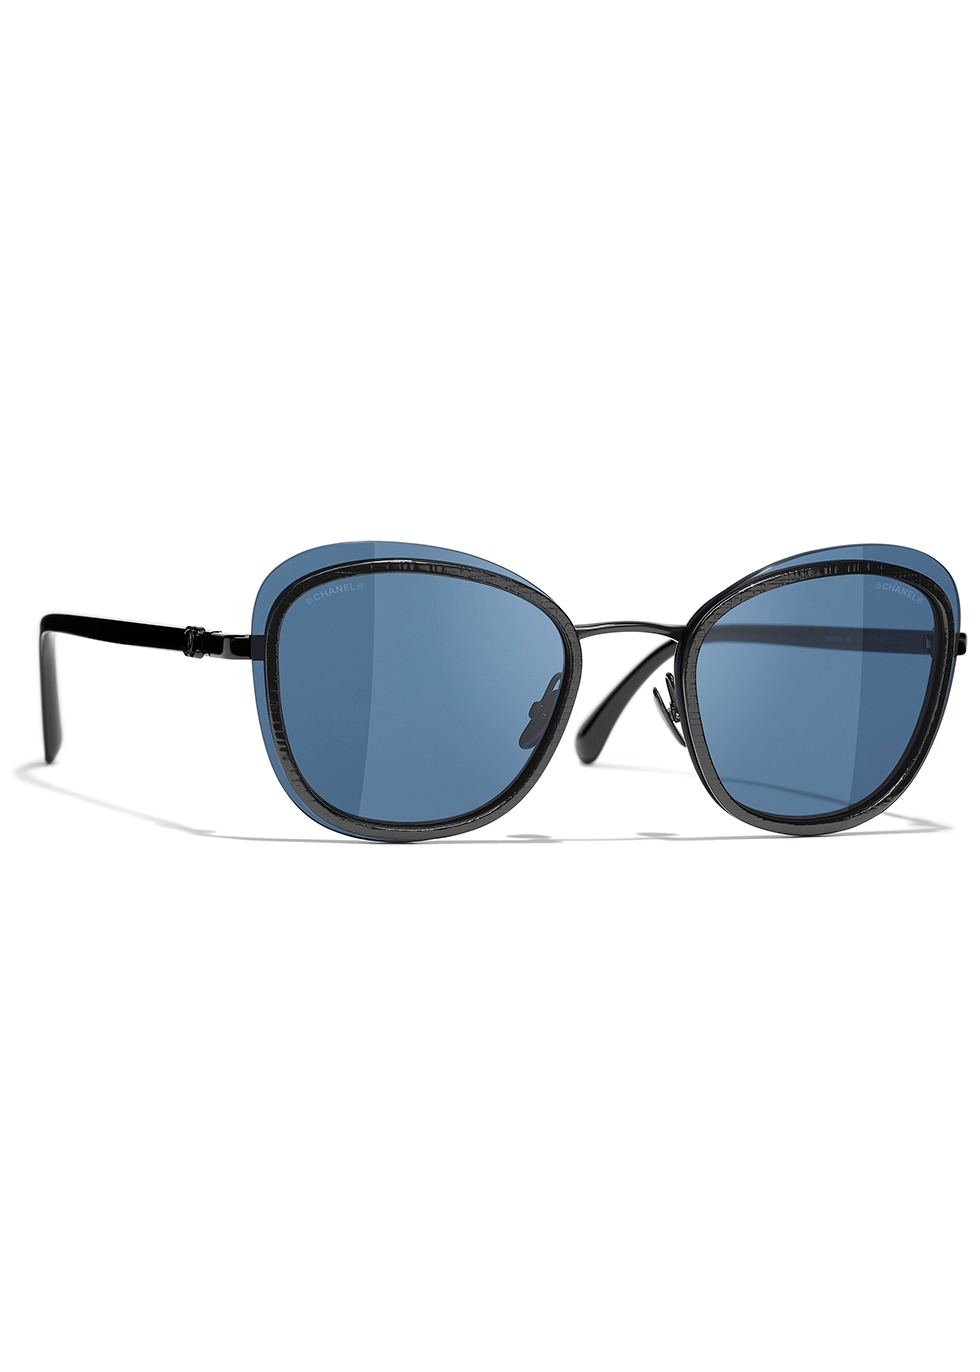 CHANEL Square sunglasses in c135s2  black blue gradient